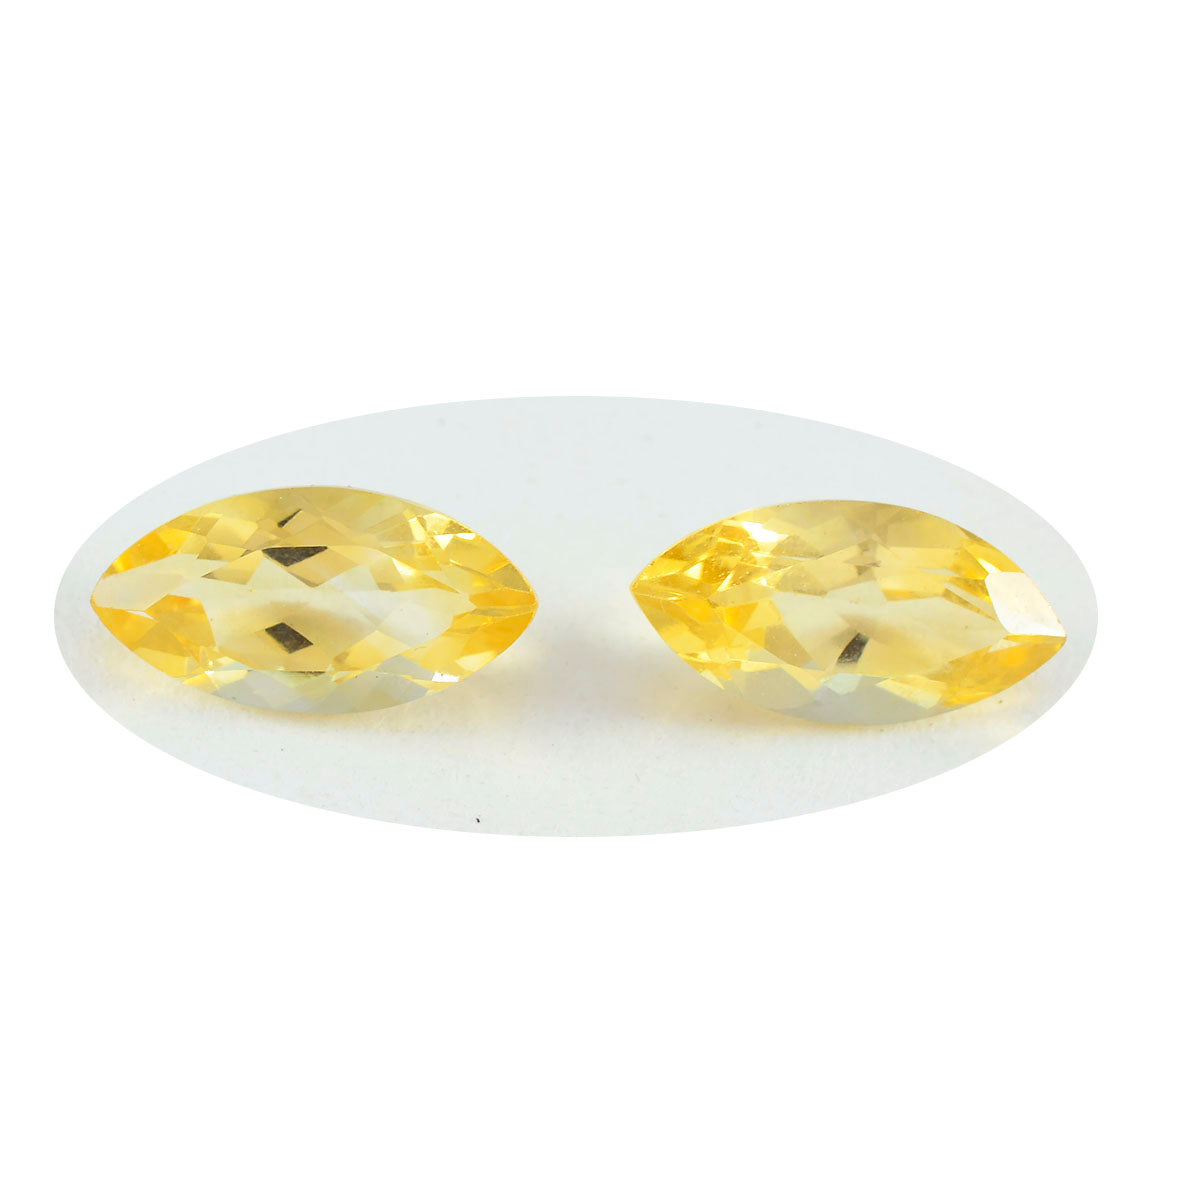 riyogems 1шт натуральный желтый цитрин ограненный 8x16 мм форма маркиза +1 драгоценный камень качества